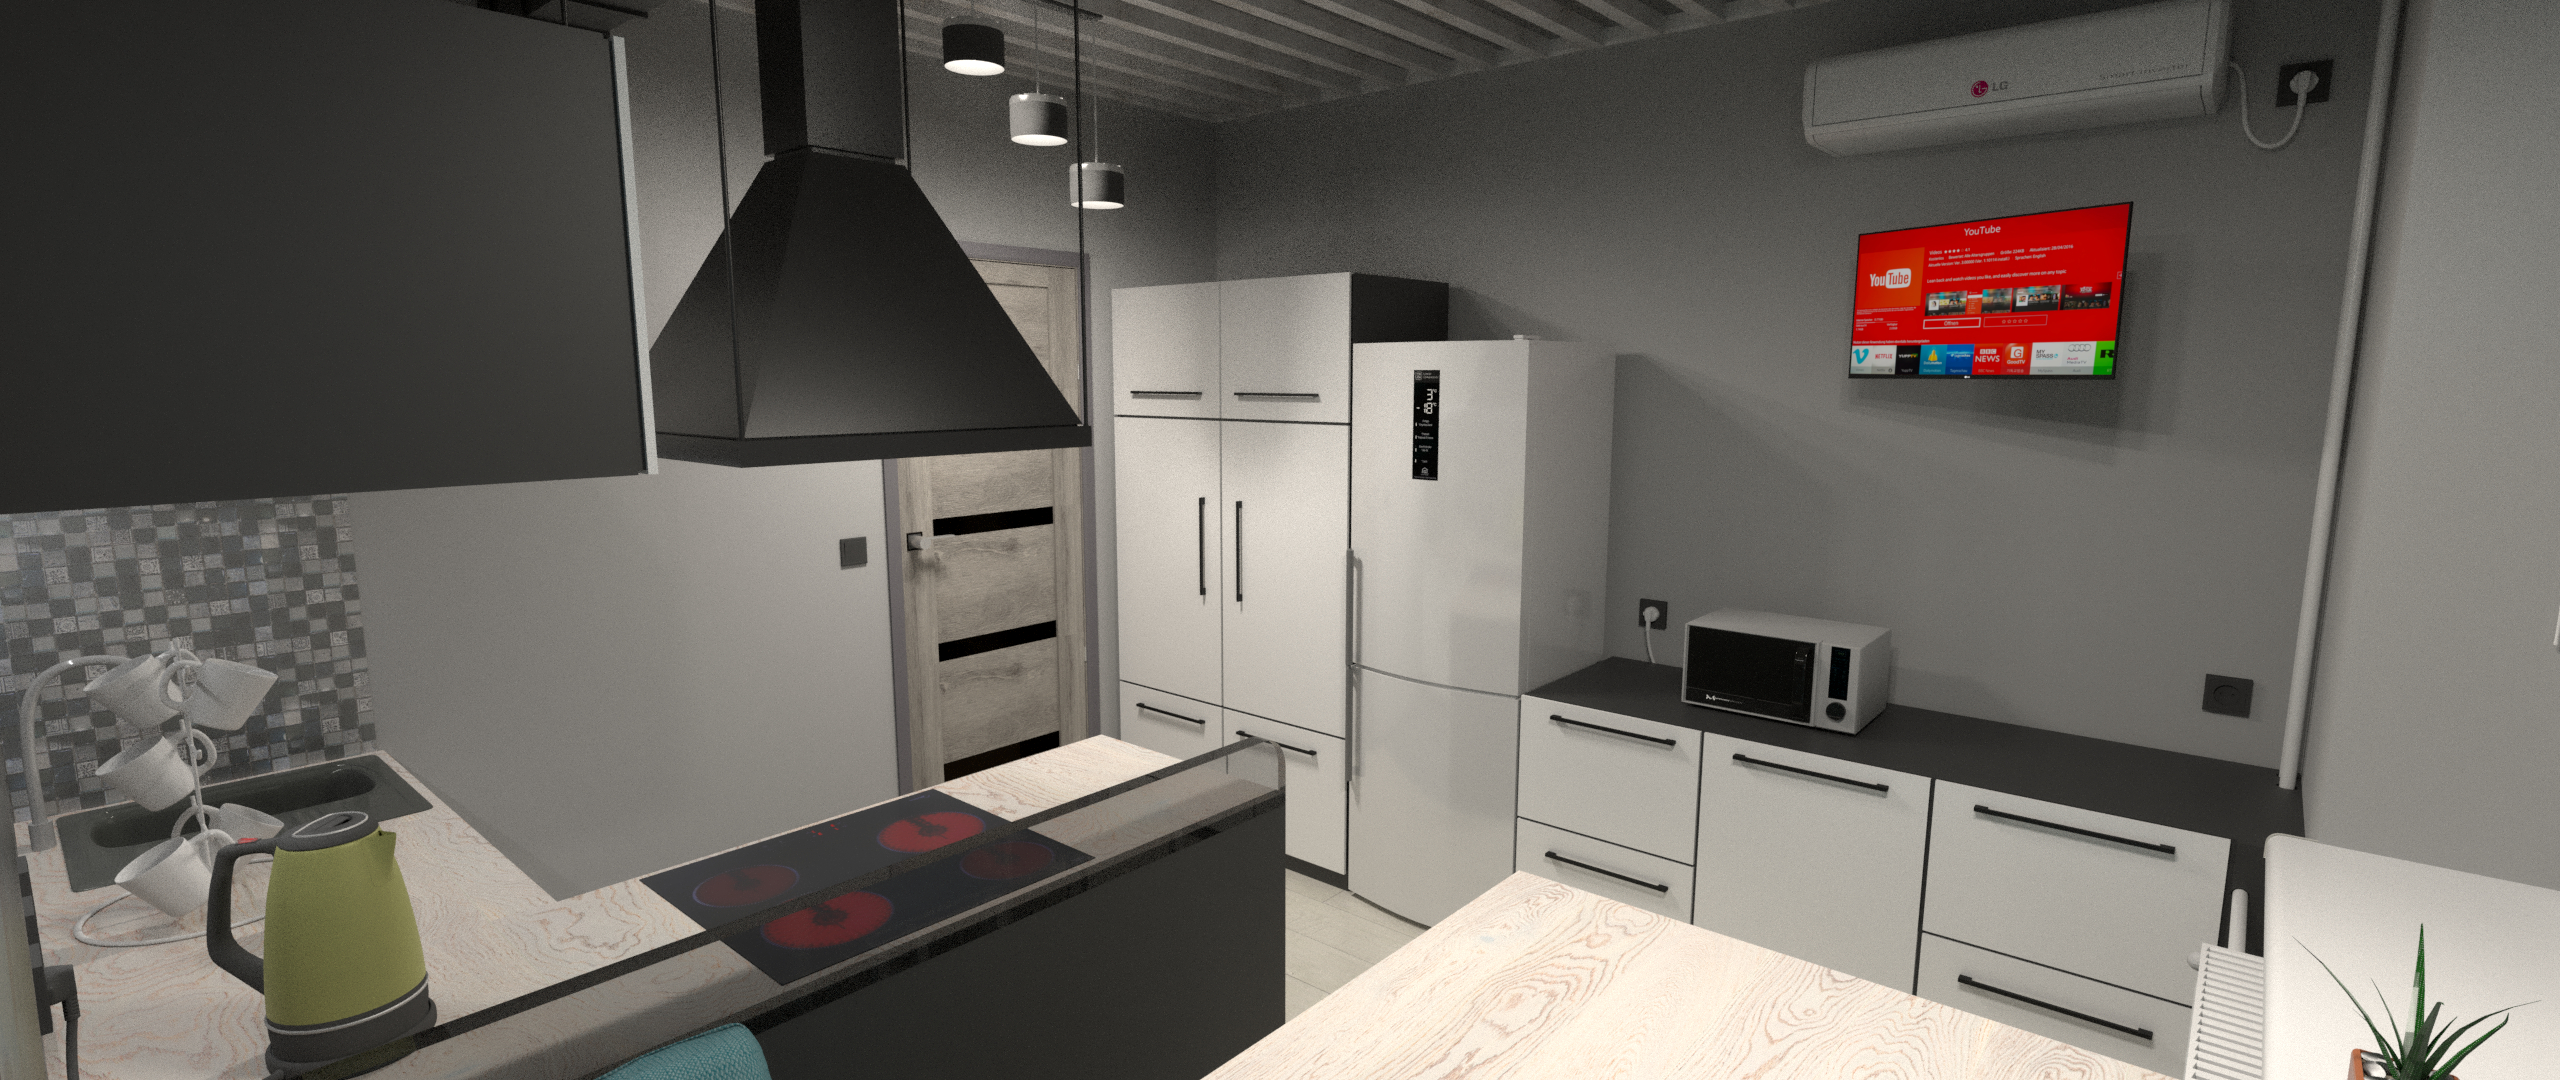 Кухня в Blender cycles render изображение